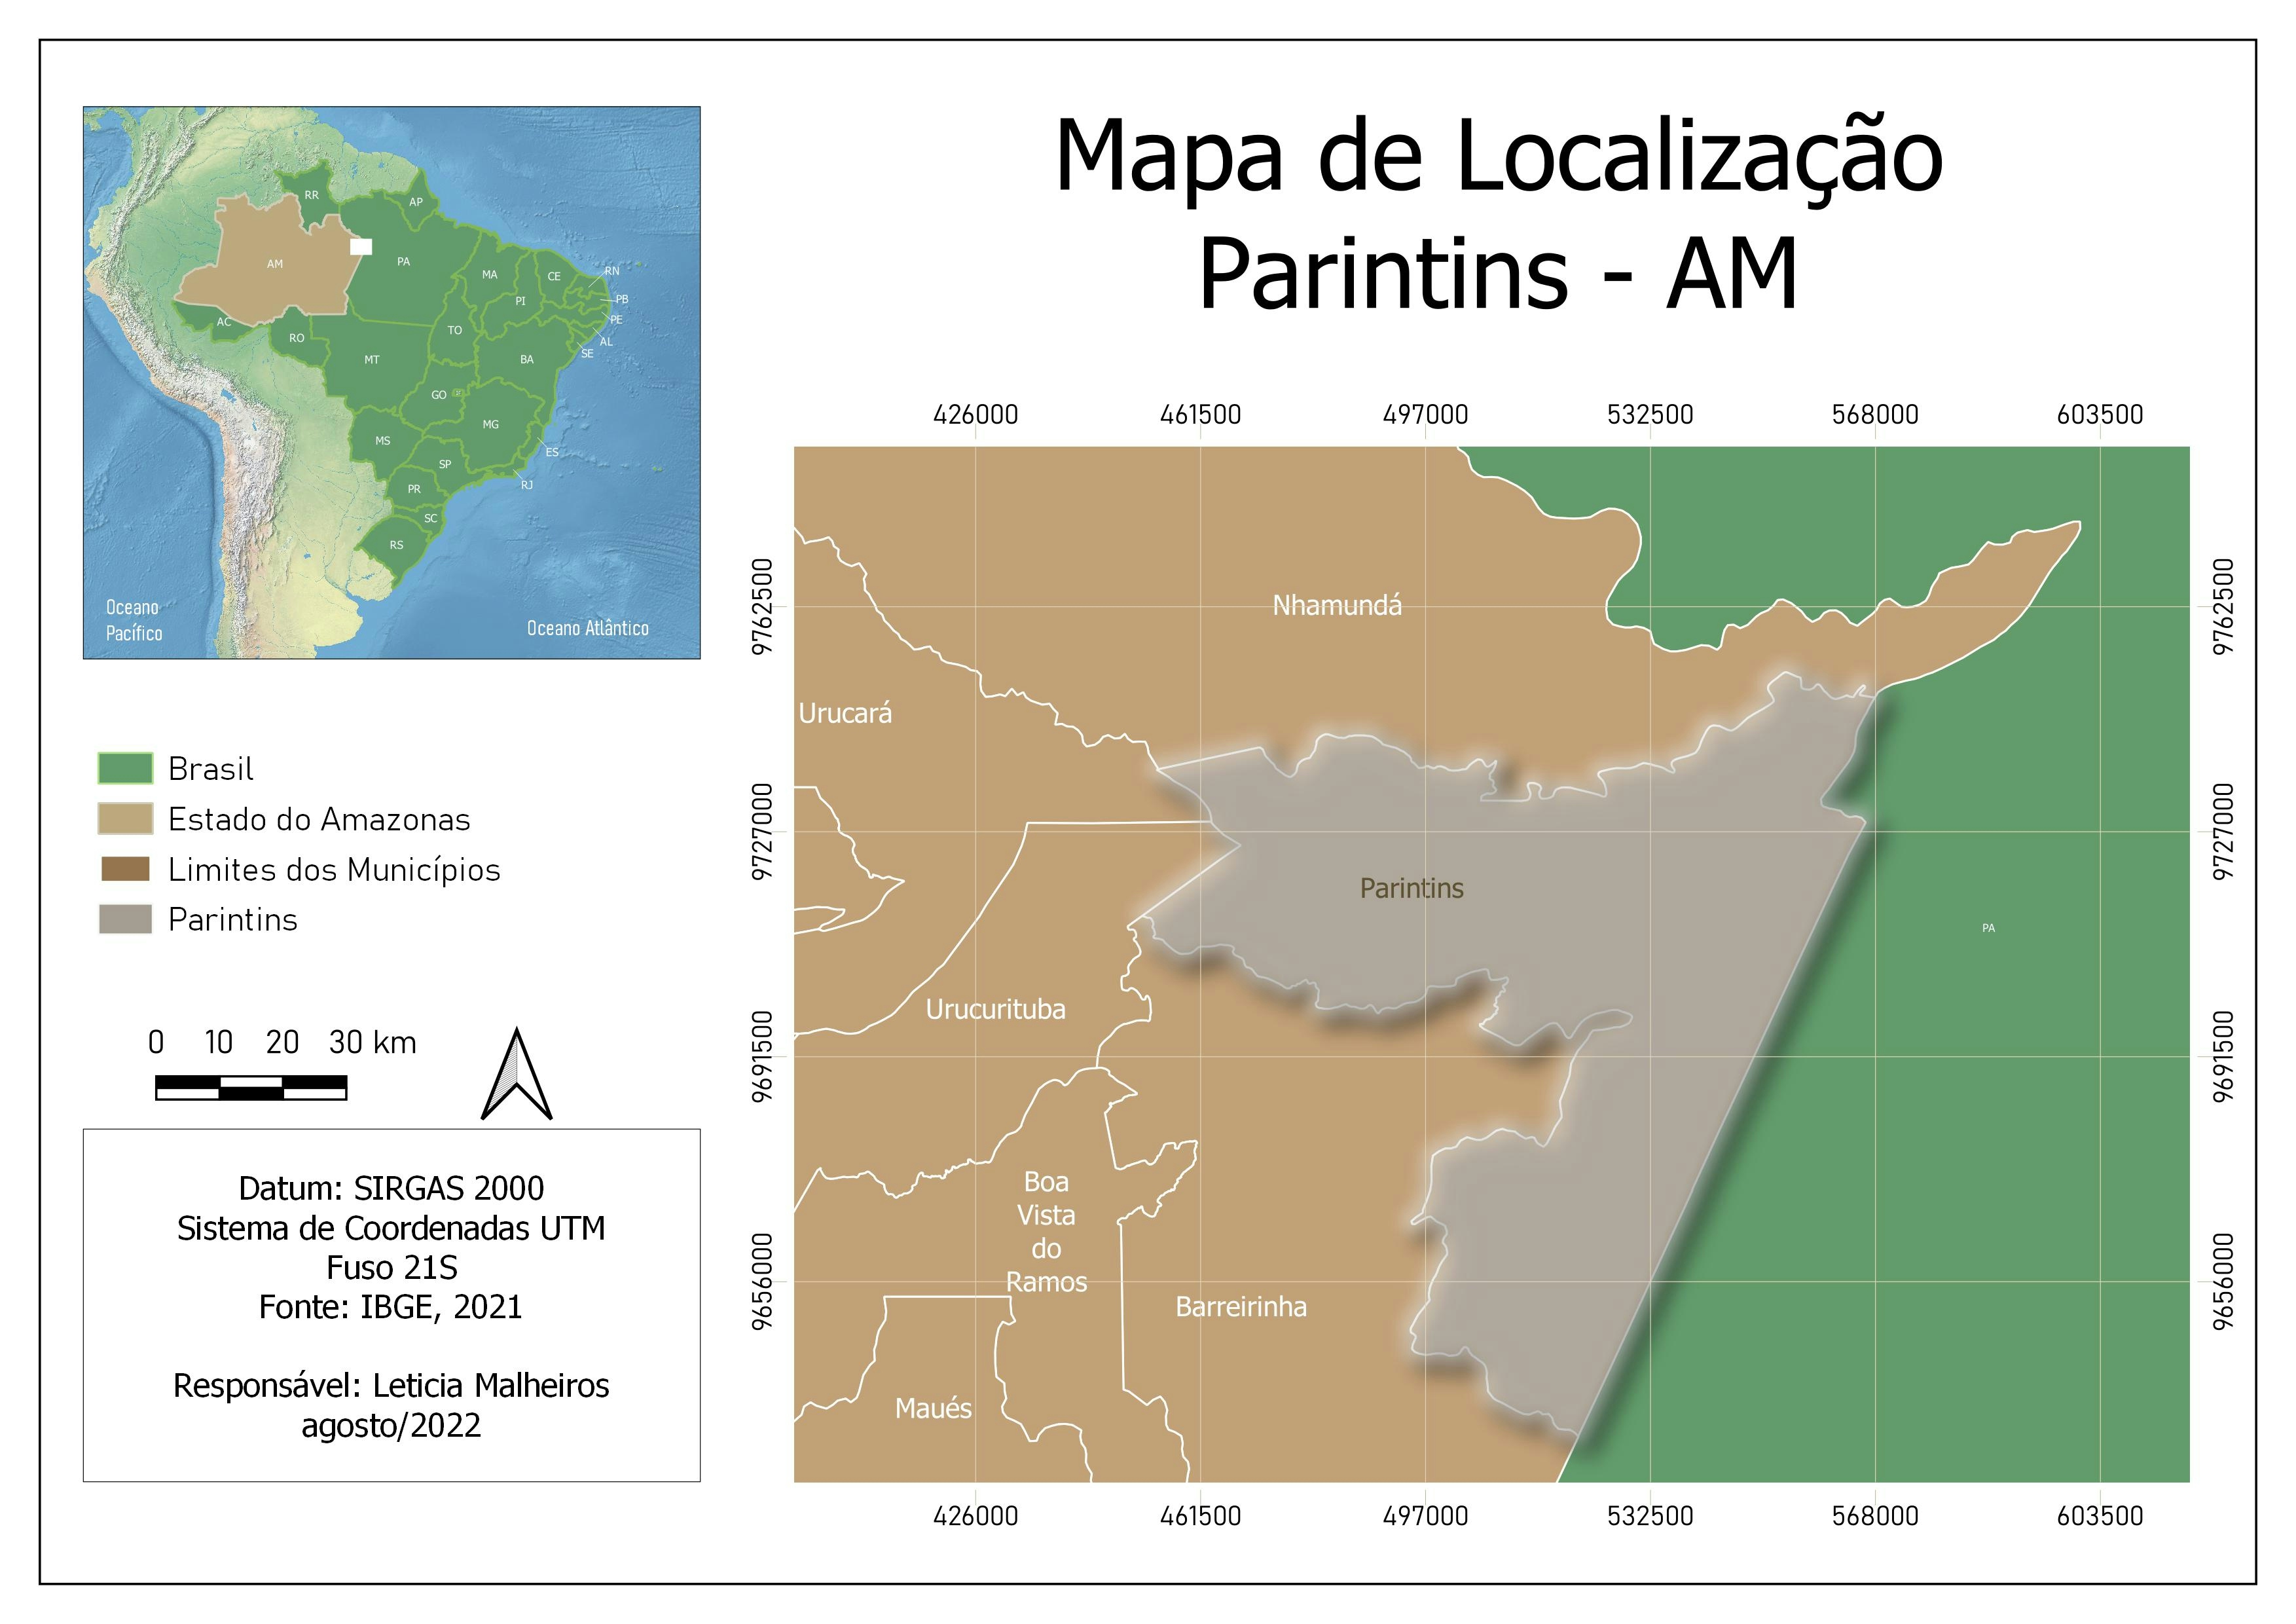 Mapa de Localização de Parintins - AM